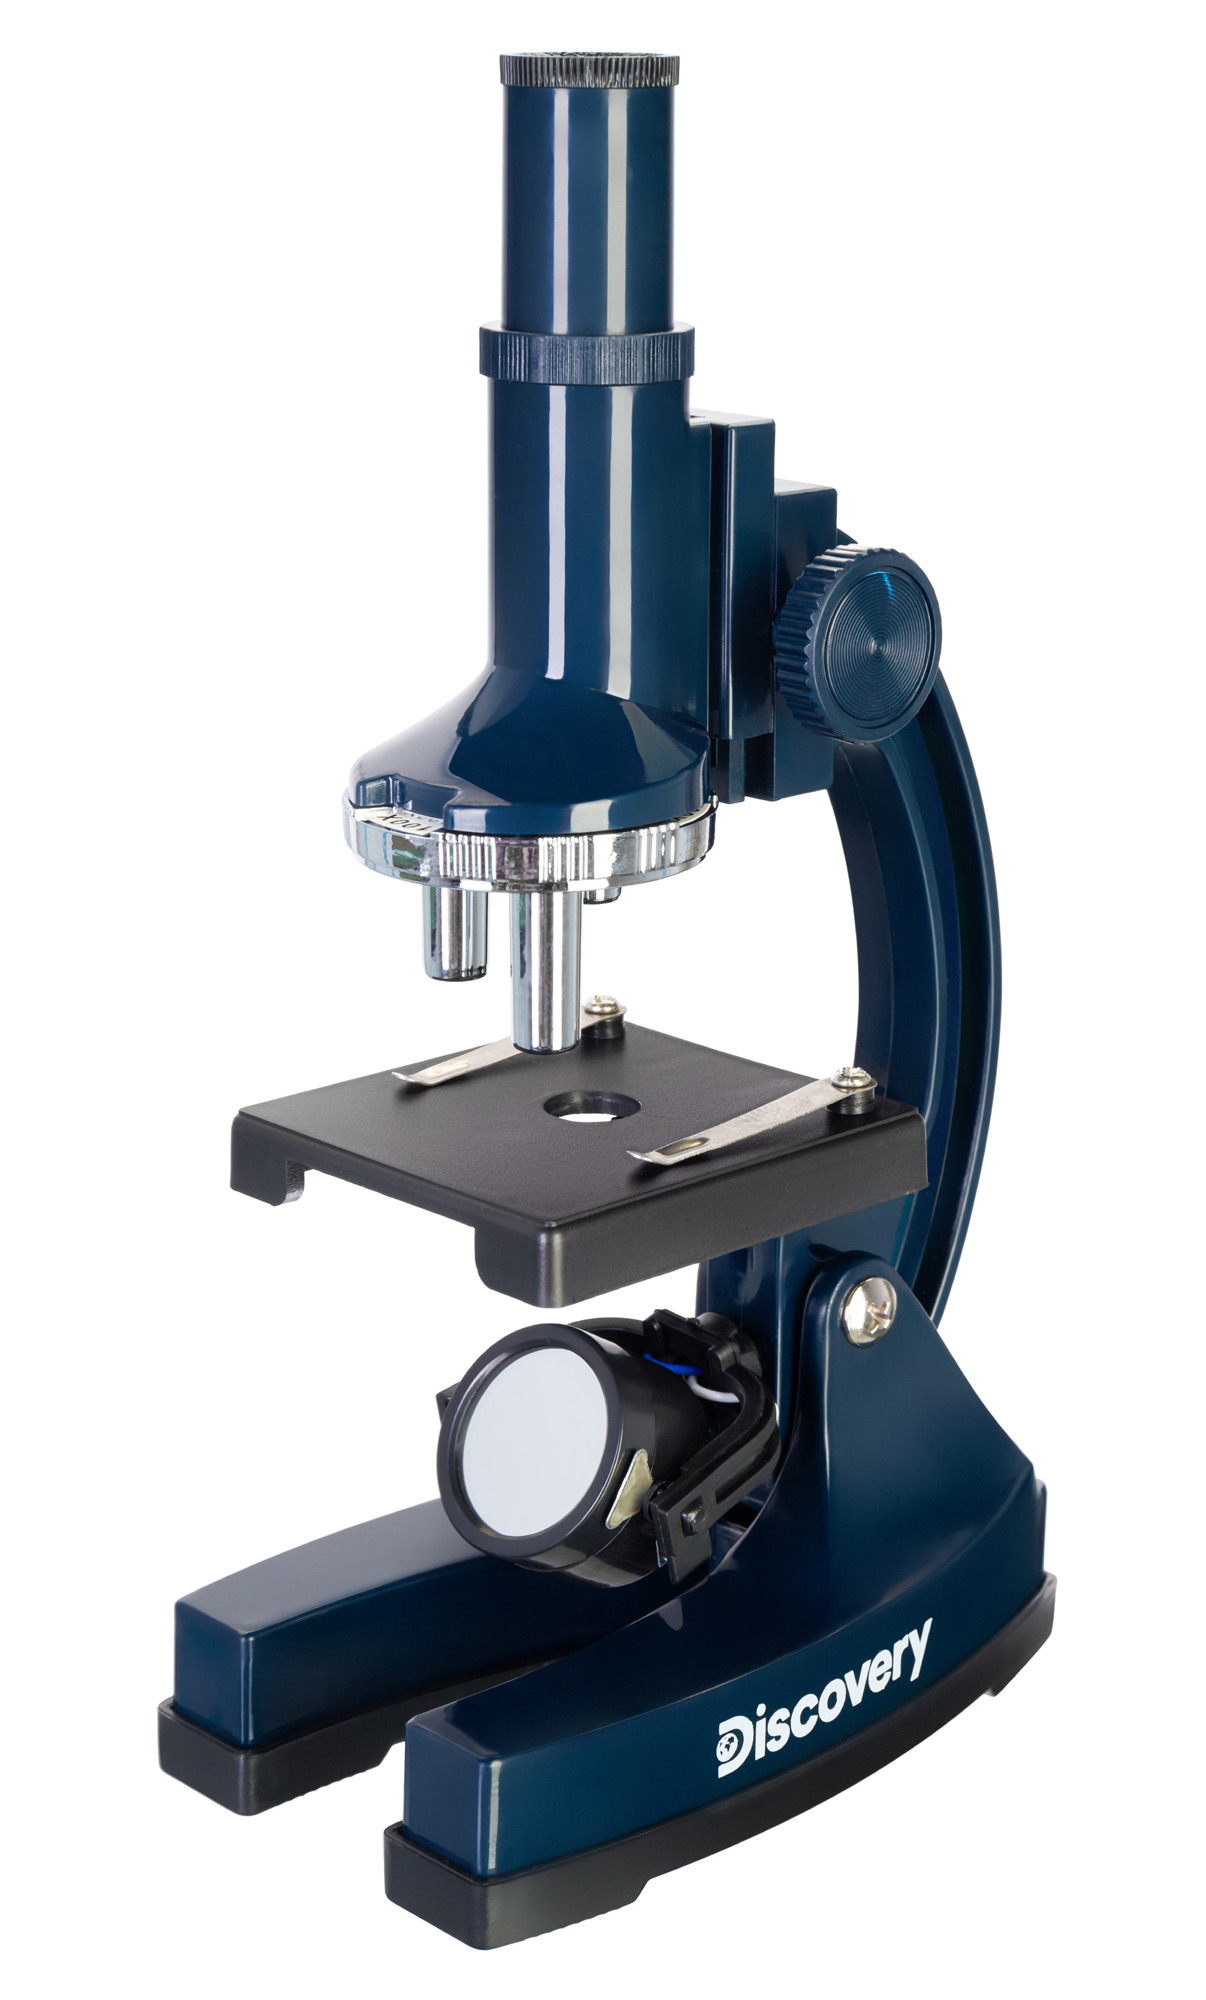 Микроскоп Levenhuk Discovery Centi 02 с книгой (выставочный образец)